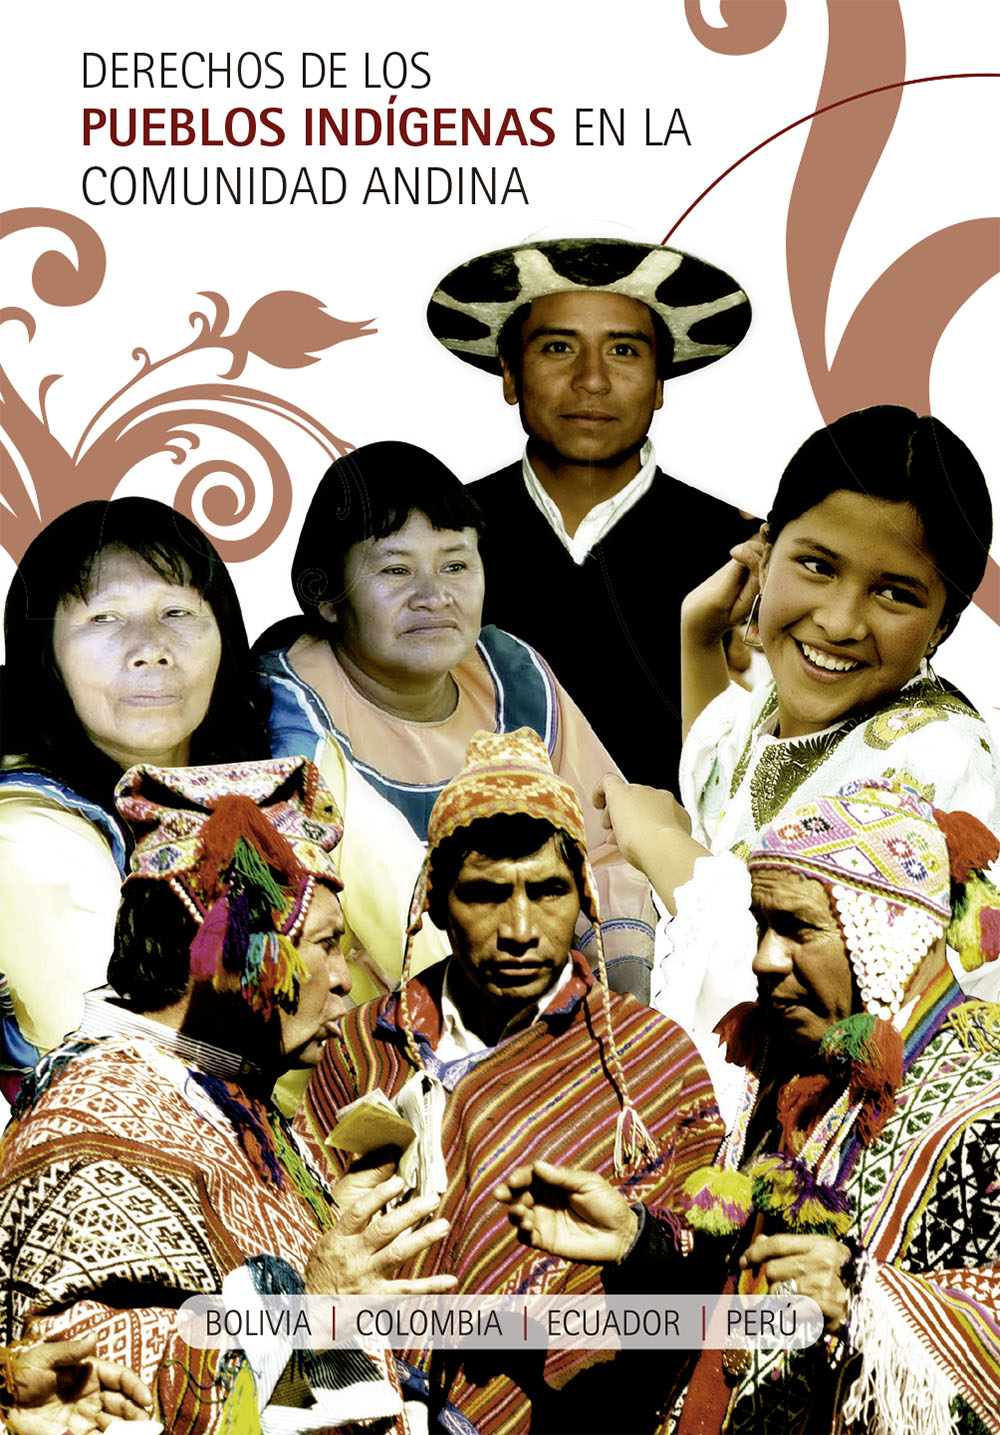 Derechos de los pueblos indígenas en la Comunidad Andina